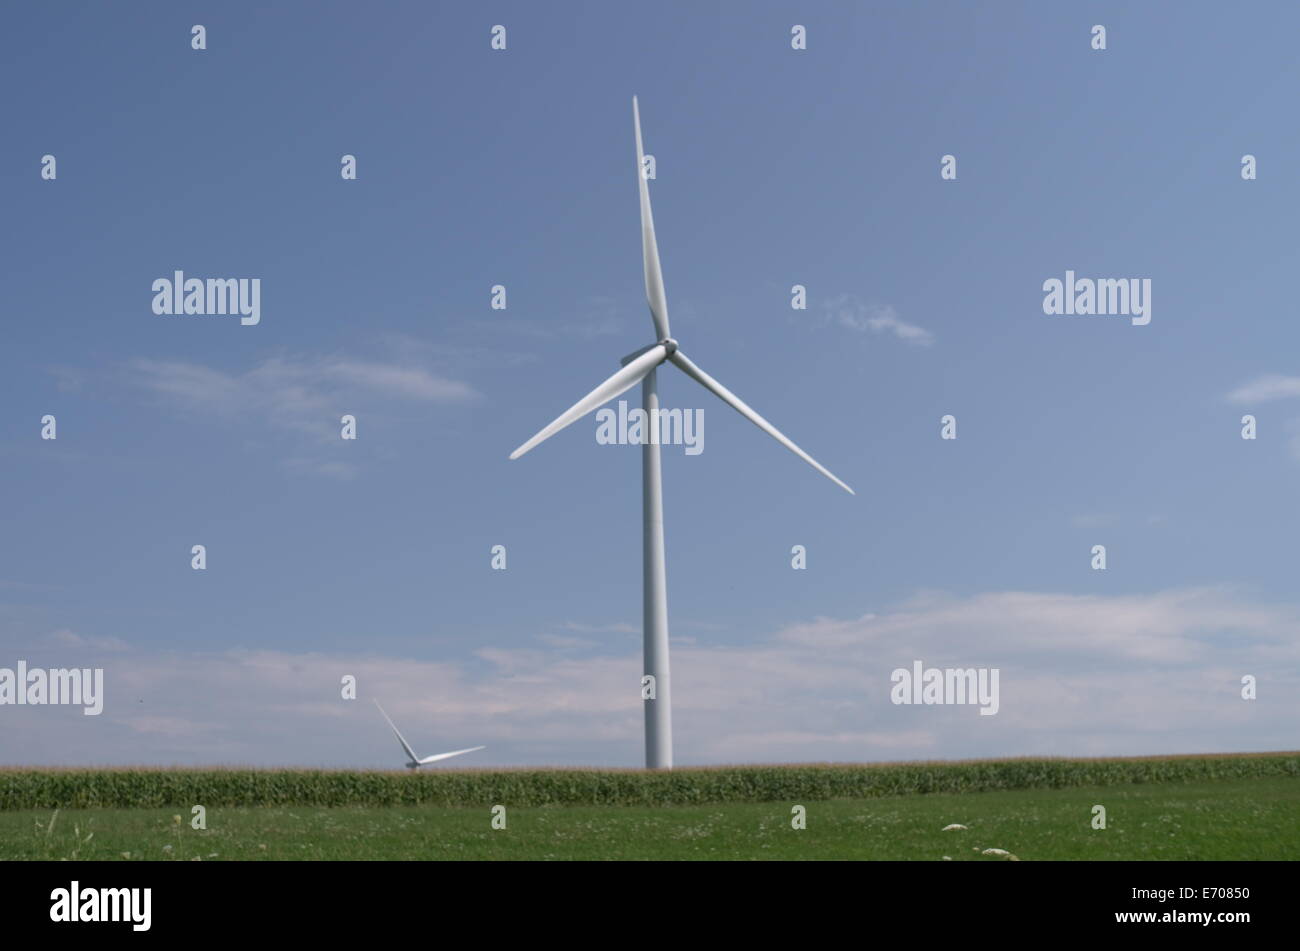 Giant wind turbine located near Warsaw, New York Stock Photo